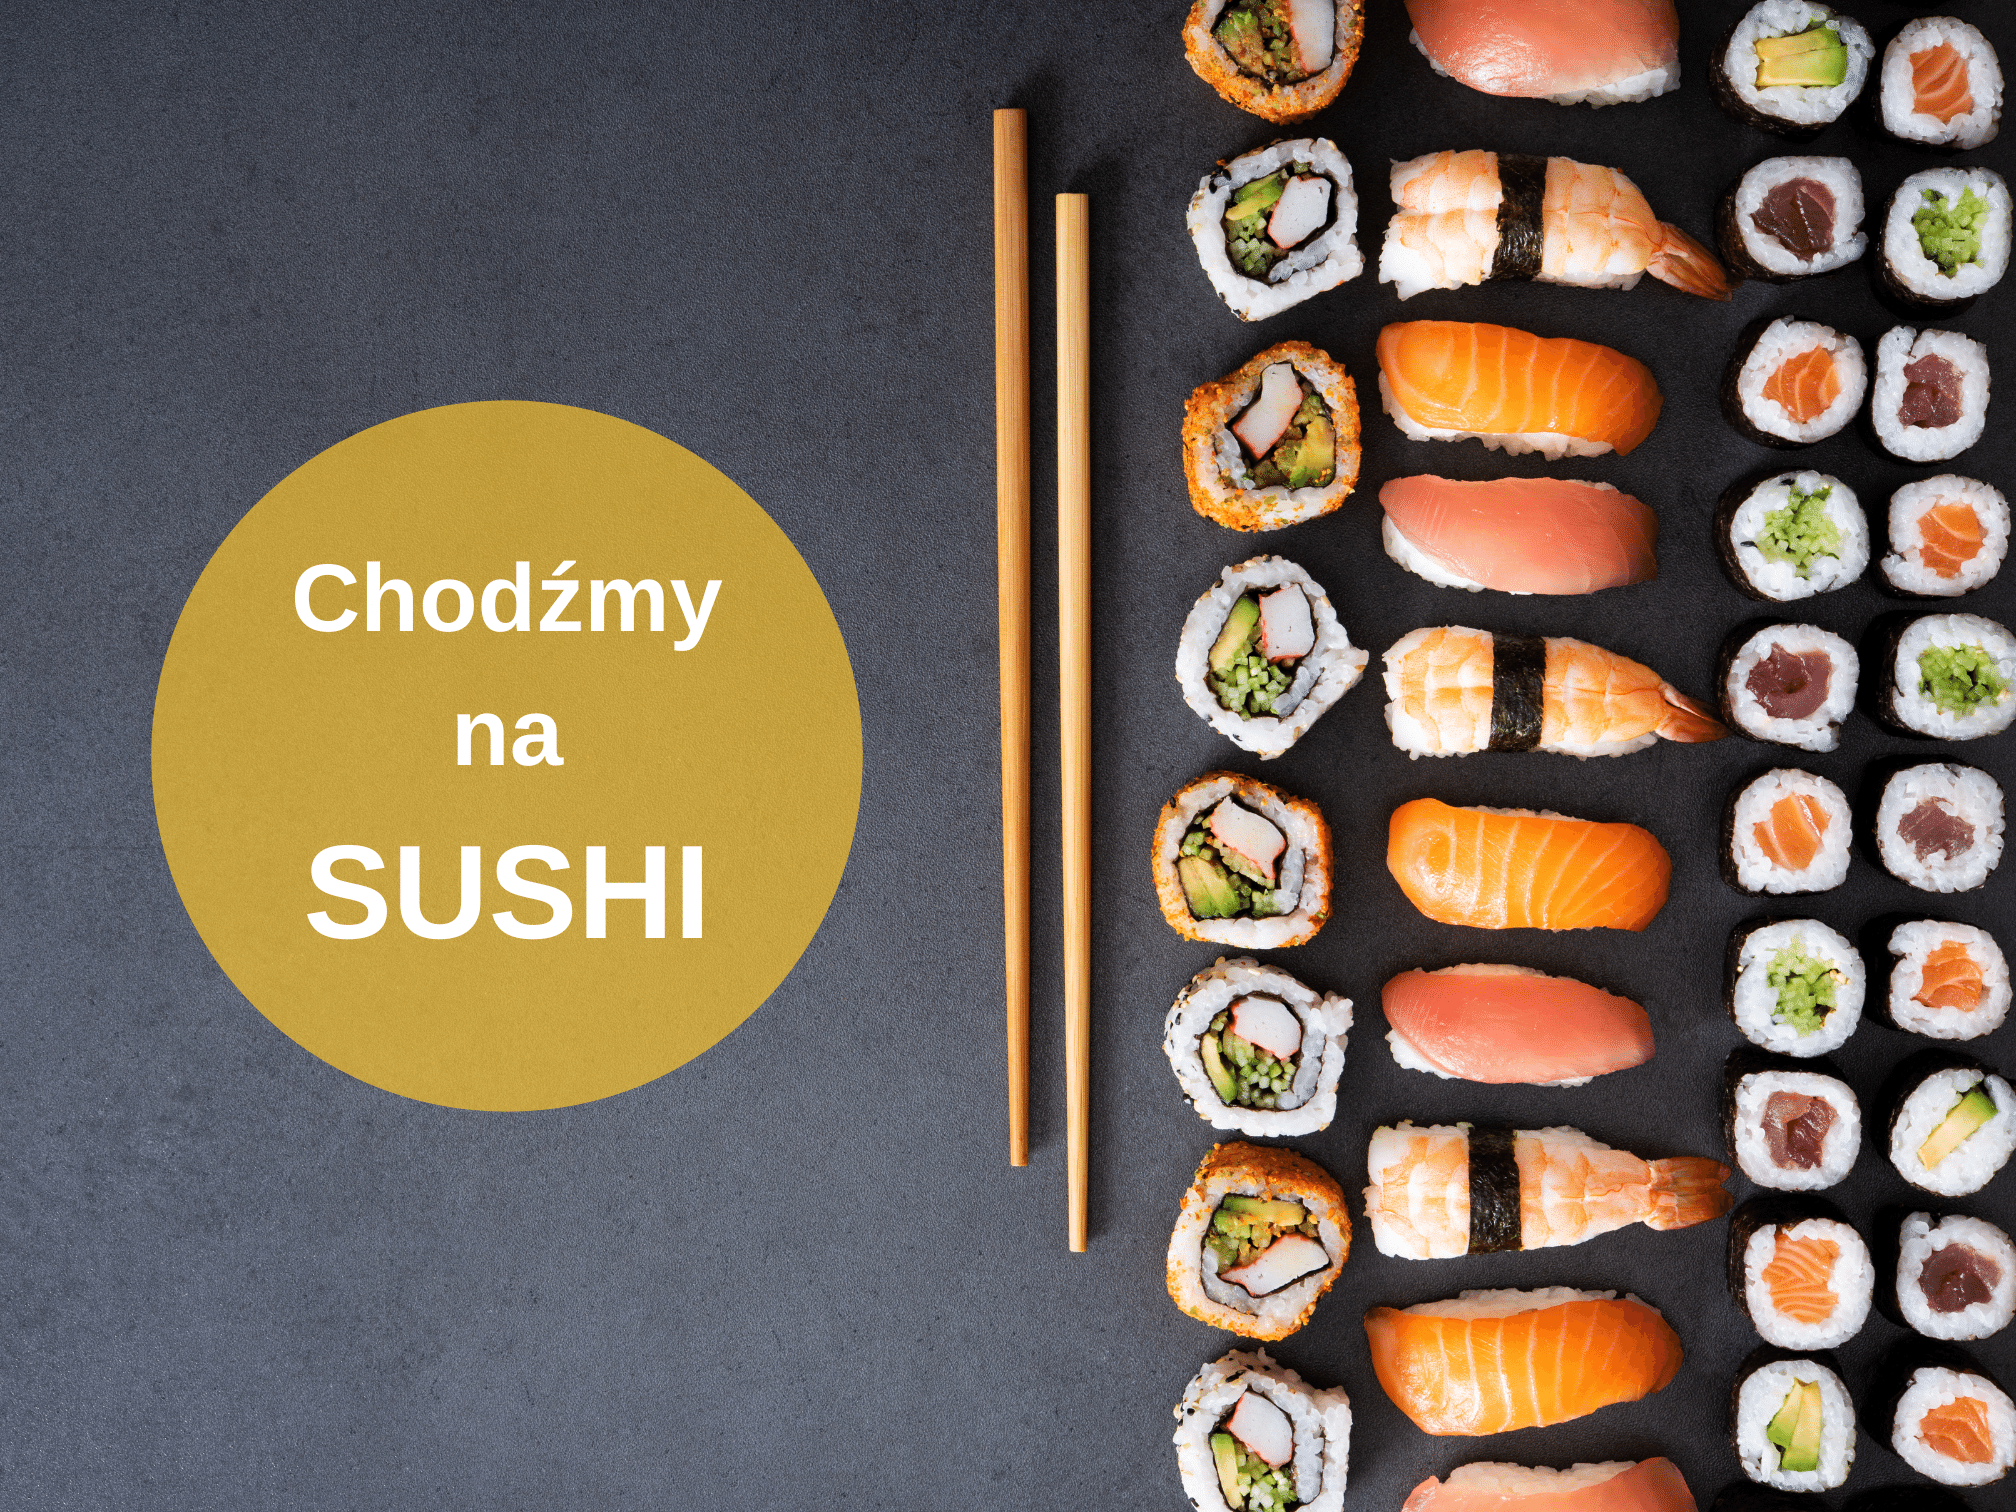 Chodźmy na sushi - Chodźmy na Sushi